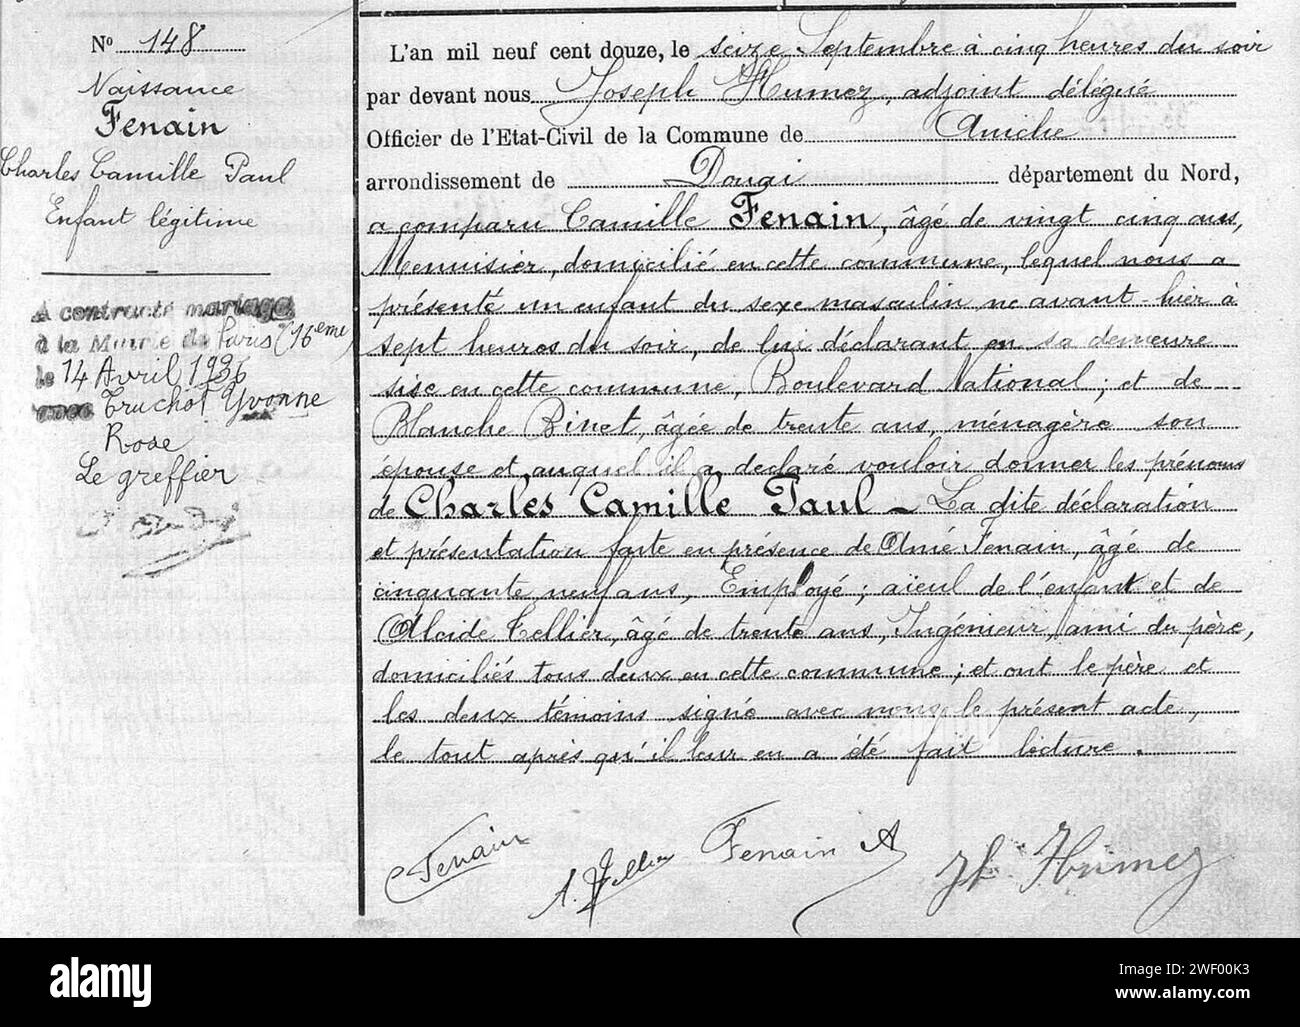 Aniche - Acte de naissance de Charles Camille Paul Fenain, futur maire de Douai, daté du 16 septembre 1912, né l'avant-veille, signé par l'adjoint Joseph Humez. Foto Stock